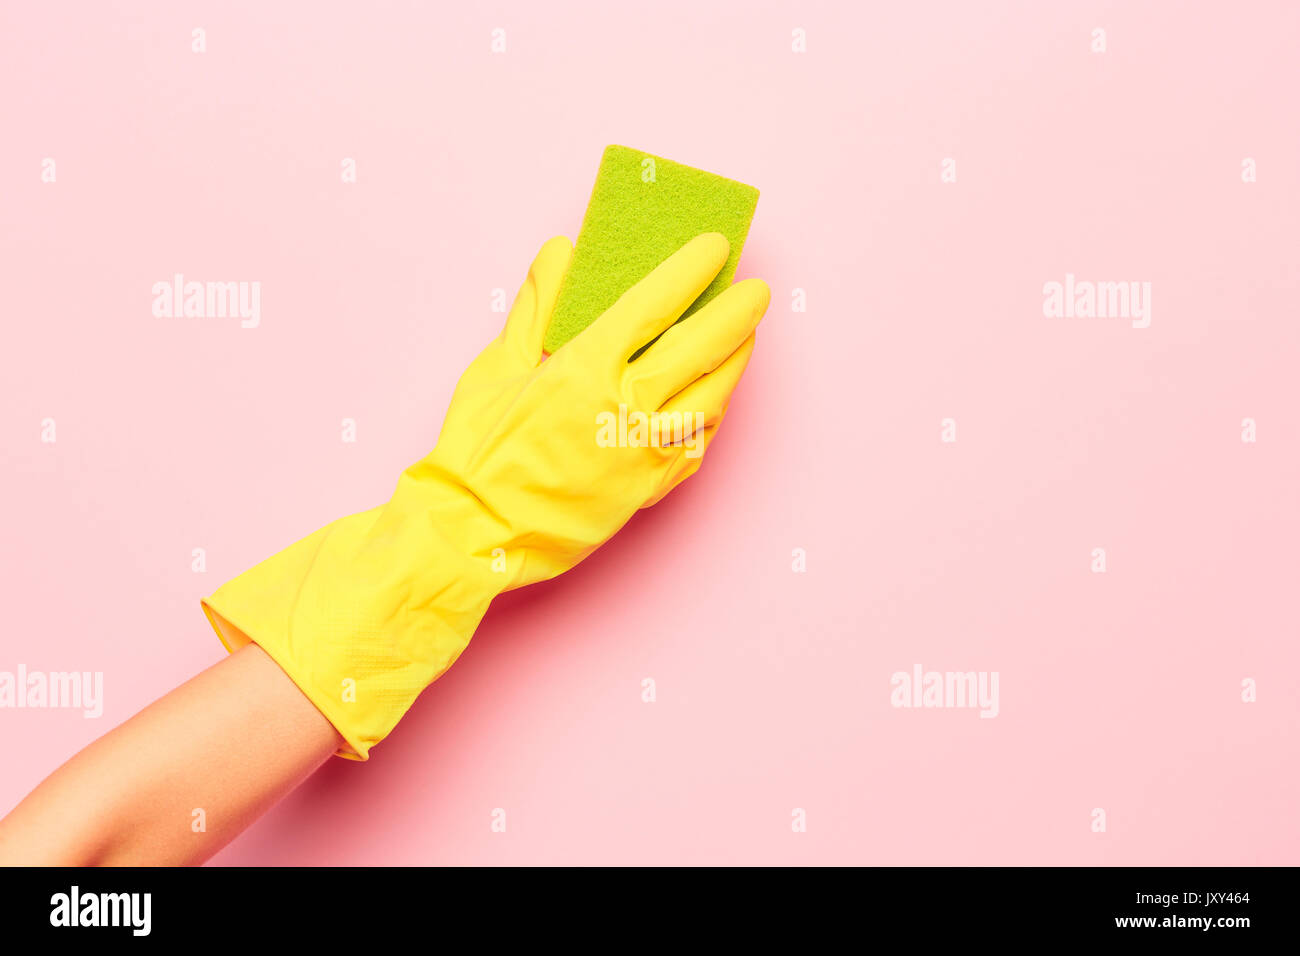 La limpieza de las manos de la mujer sobre un fondo de color rosa. La limpieza o el concepto de limpieza Foto de stock